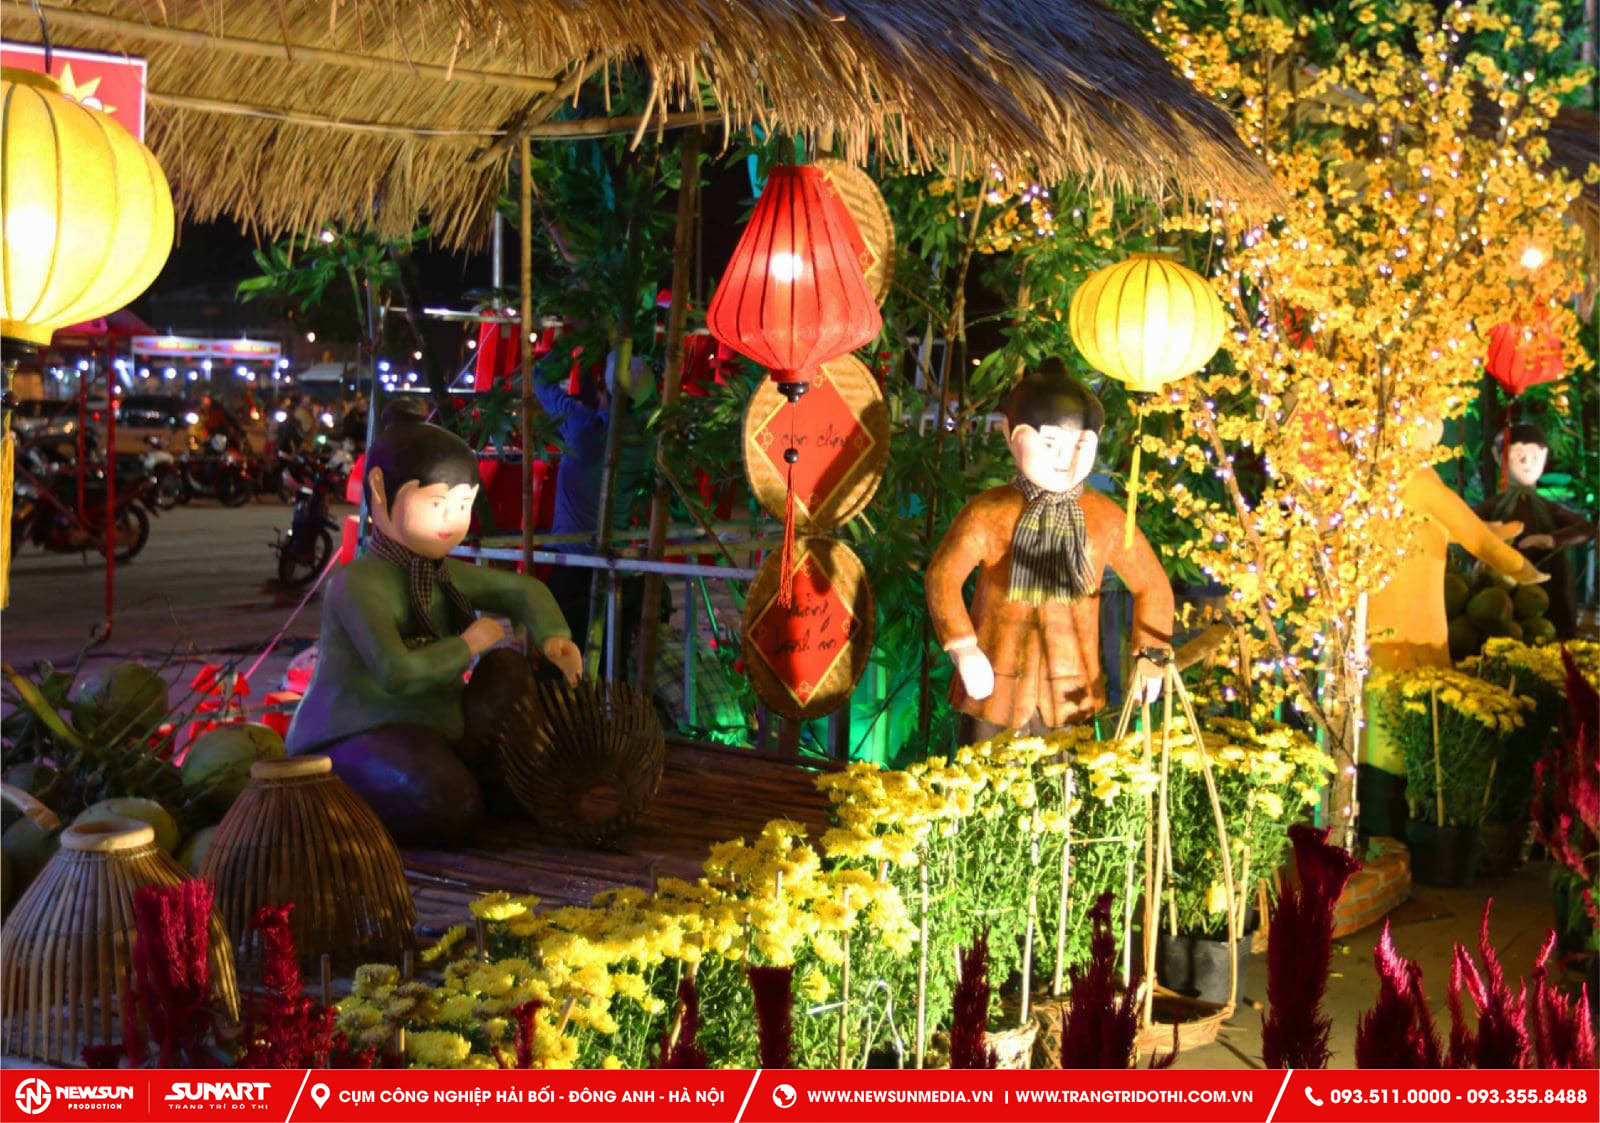 Trang trí tiểu cảnh Tết được coi là một nét đẹp văn hóa truyền thống của dân tộc Việt Nam 